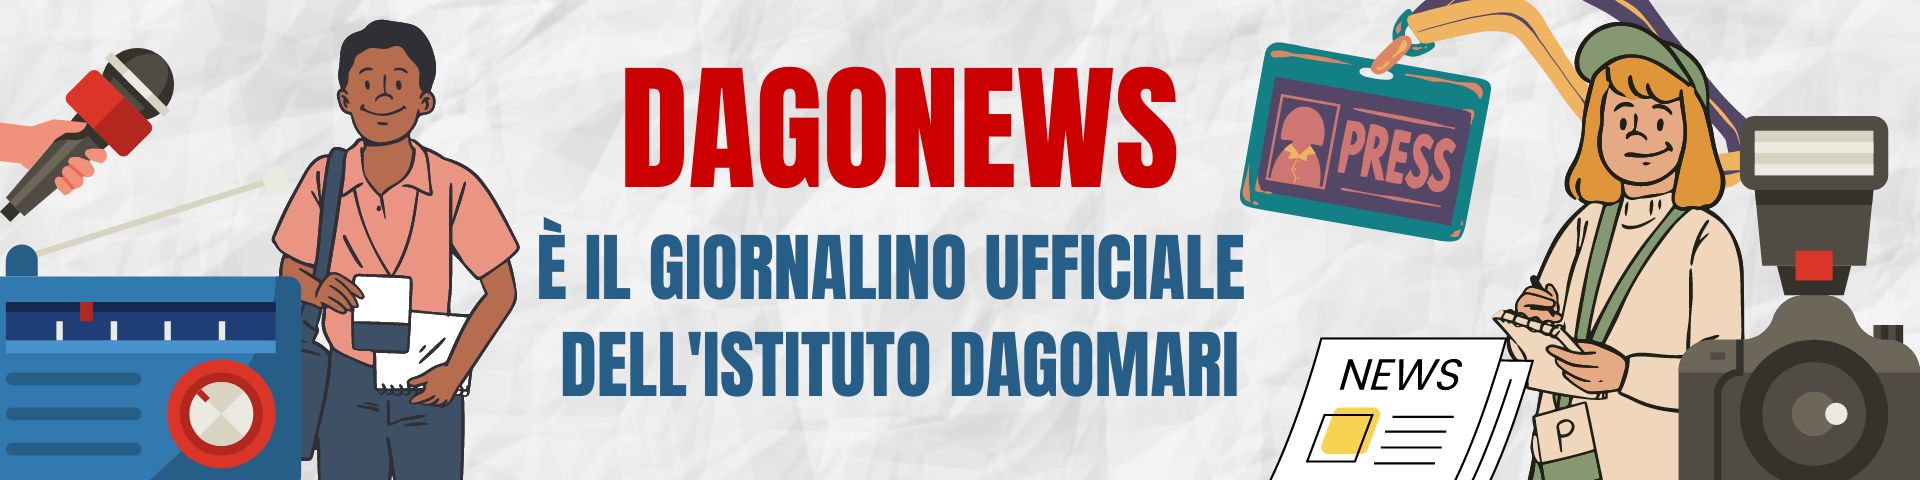 Dagonews è il giornalino ufficiale dell’Istituto Dagomari